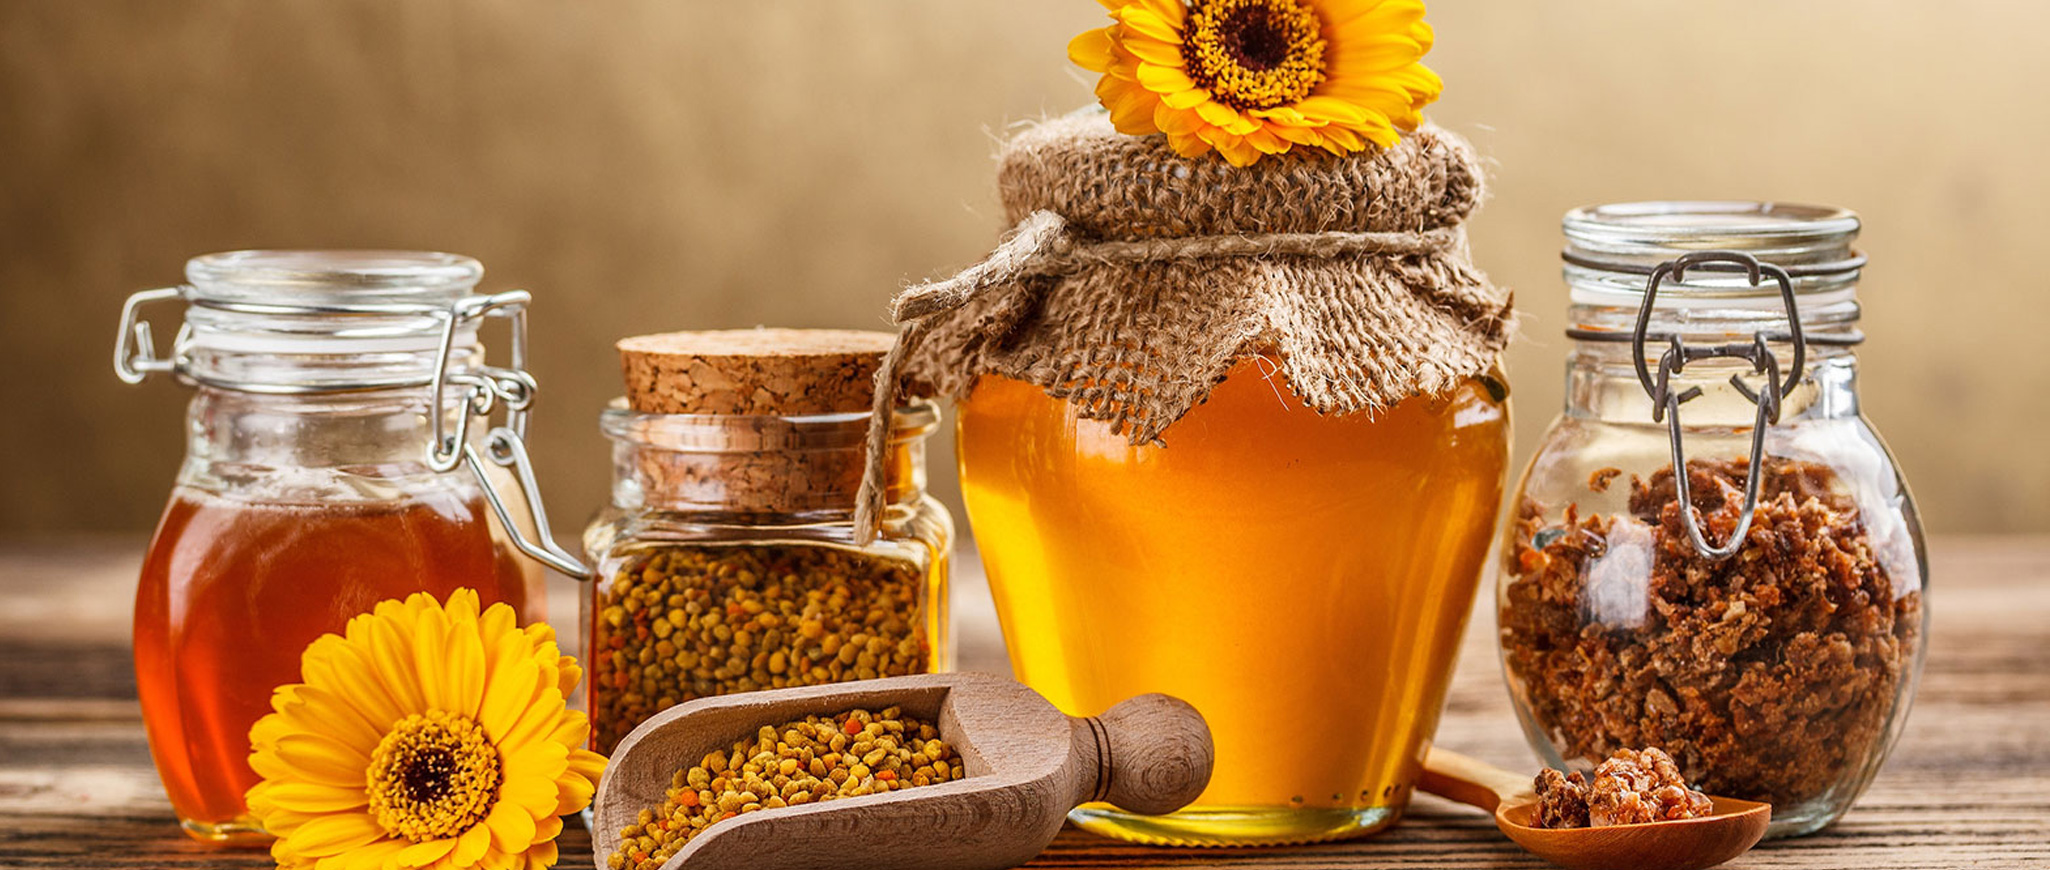 خرید عسل طبیعی | فروش عسل طبیعی | خرید عسل وحشی